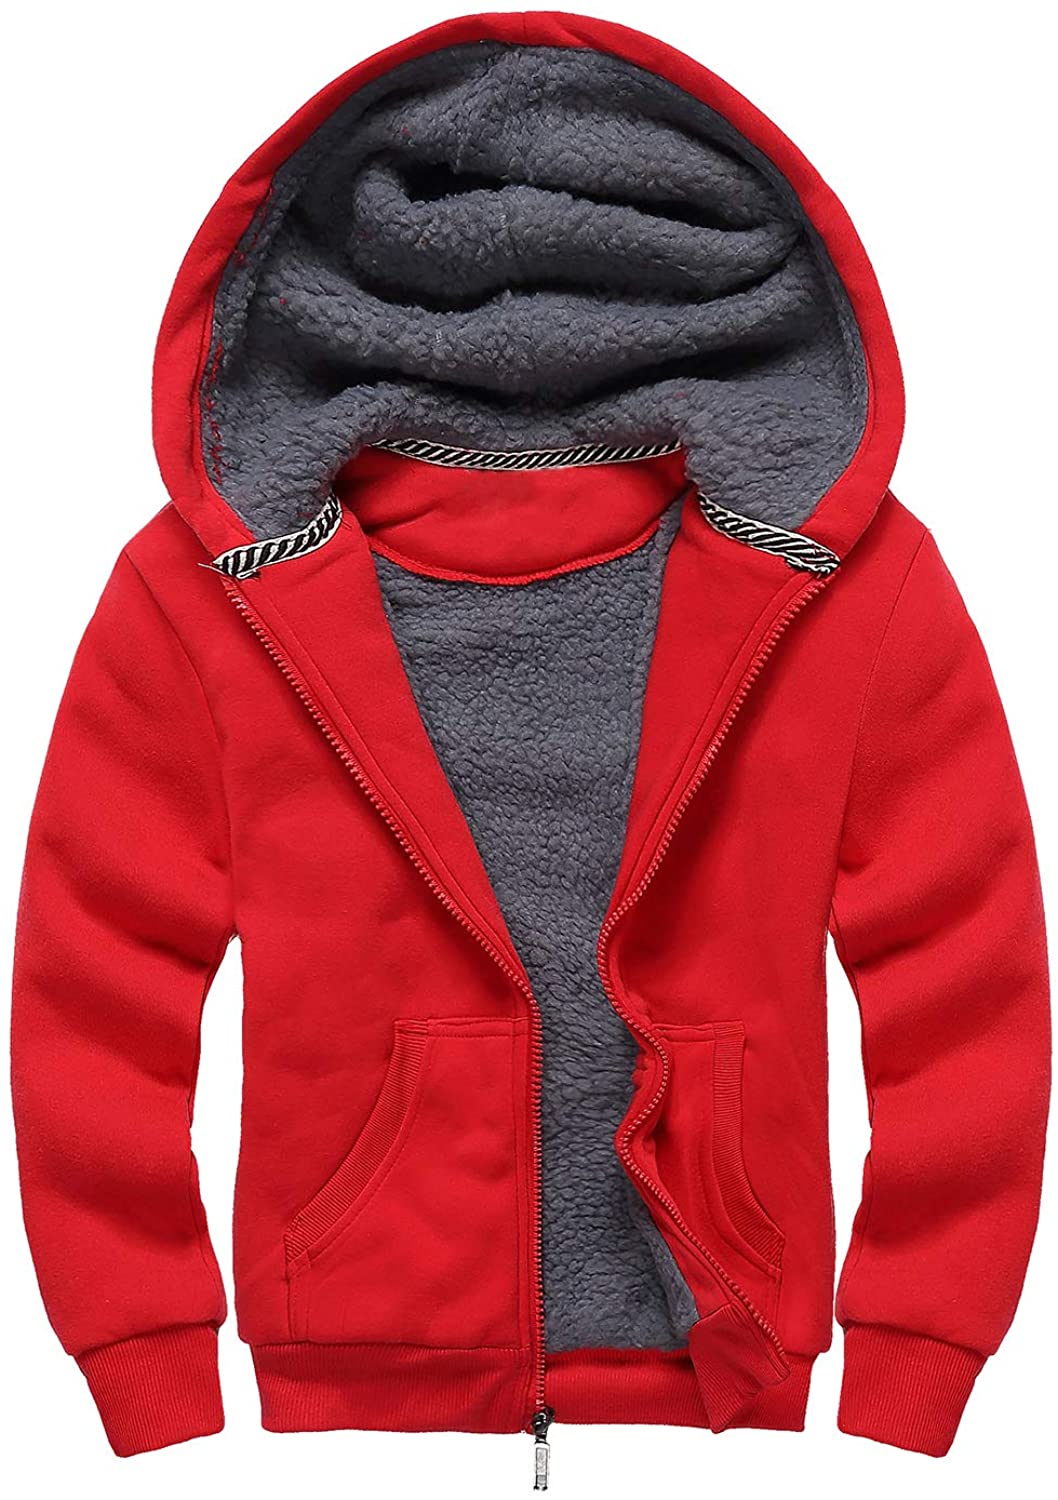 SWISSWELL Boys Hoodie Sherpa Fleece Lined Jacket Soft Warm Zipper Sweatshirt Outerwear 